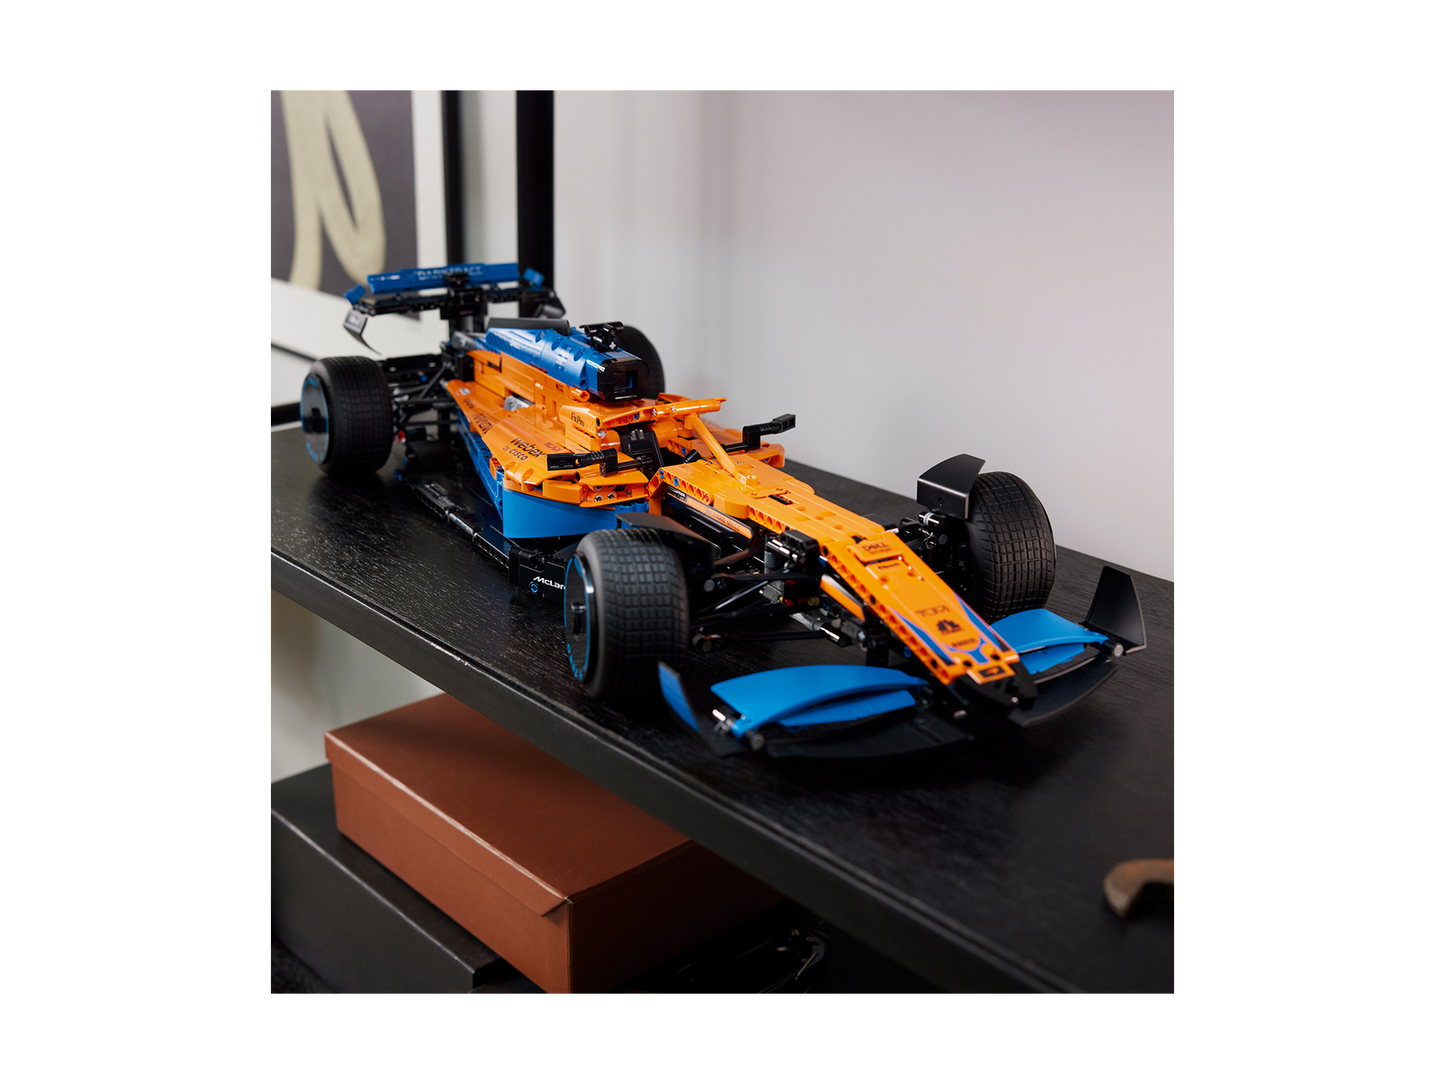 McLaren Lego Technic 2022 Formula 1 Racecar